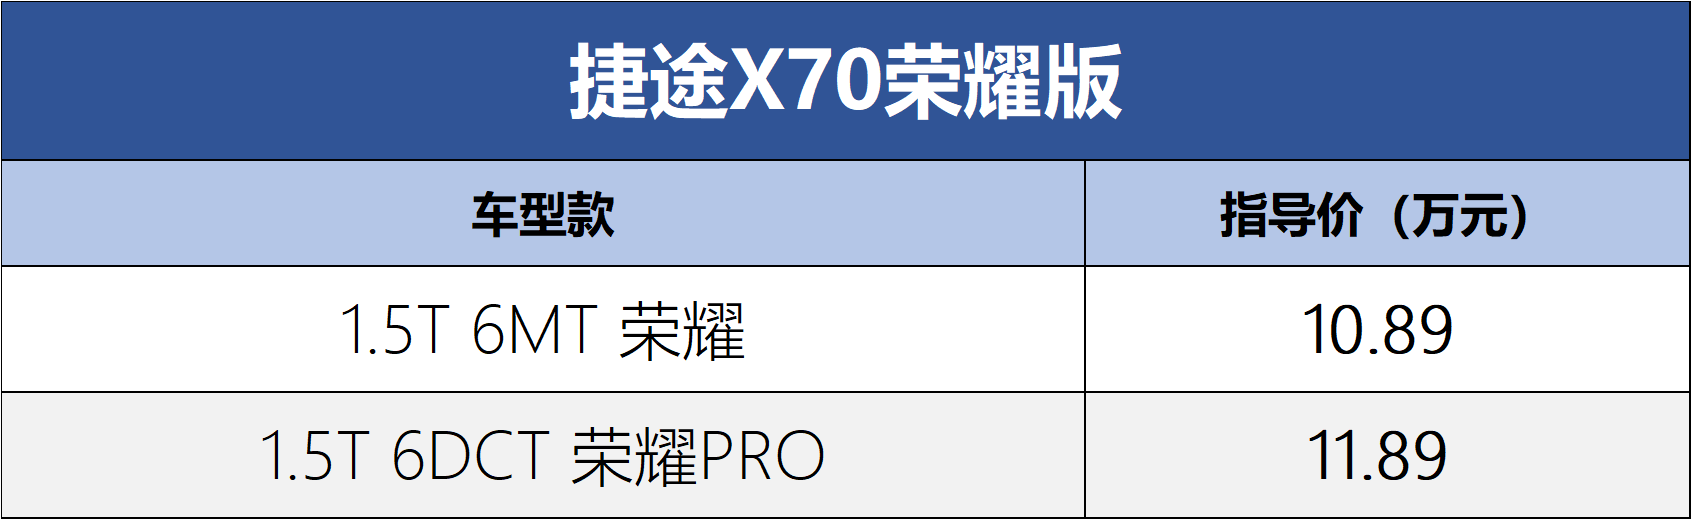 售价为10.89-11.89万元。捷途X70荣耀版上市_搜狐汽车_ Sohu.com。